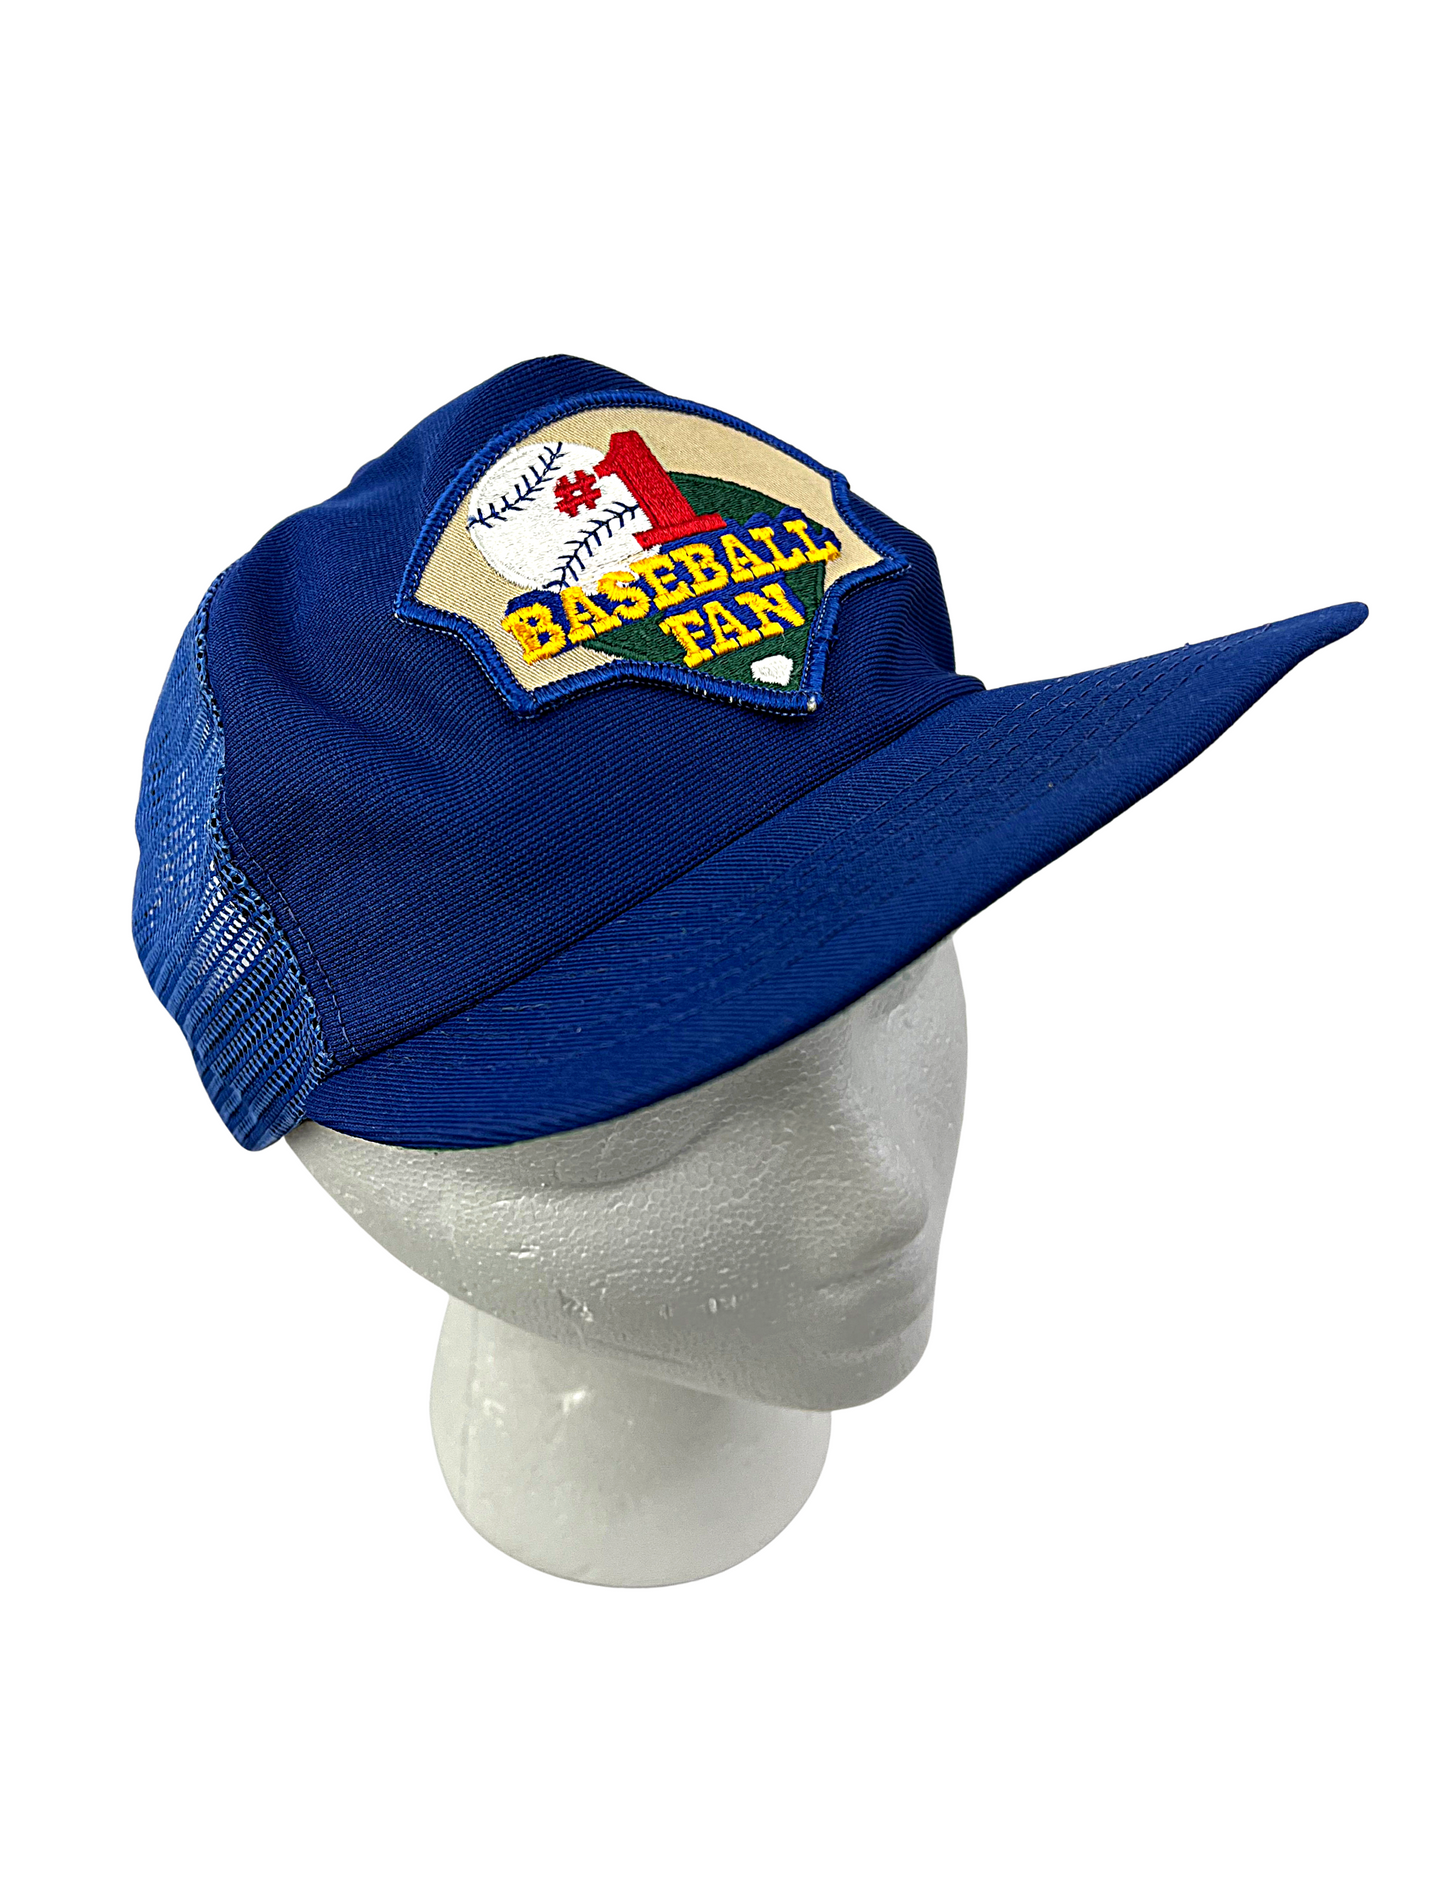 70’s #1 Baseball Fan Meshback Trucker Hat